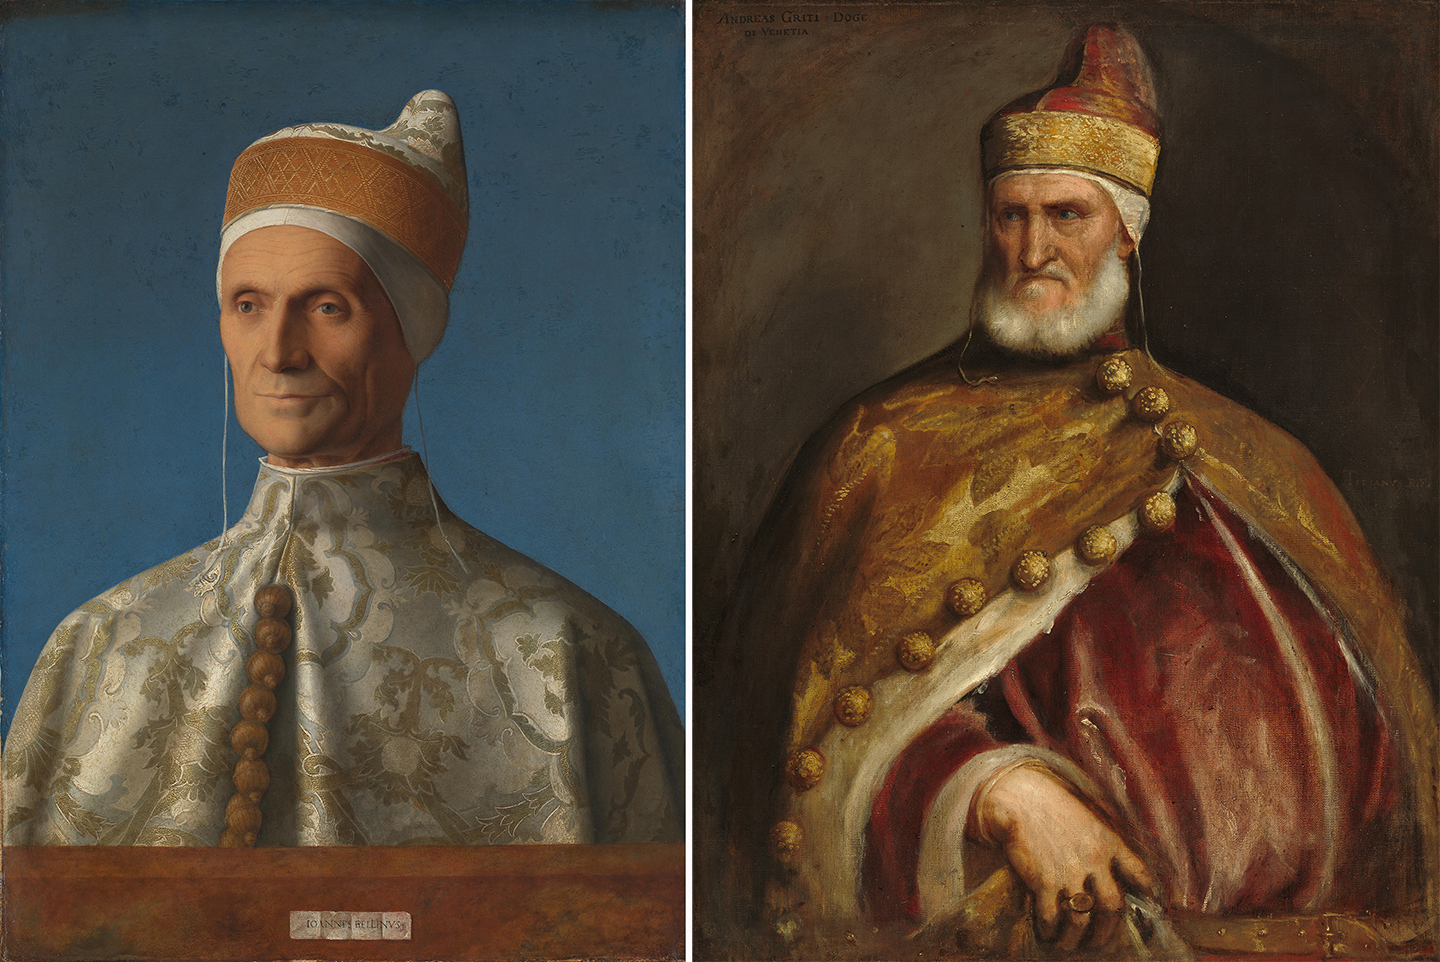 Danh họa Giovanni Bellini: Nghệ sĩ tiên phong thời kỳ Phục hưng